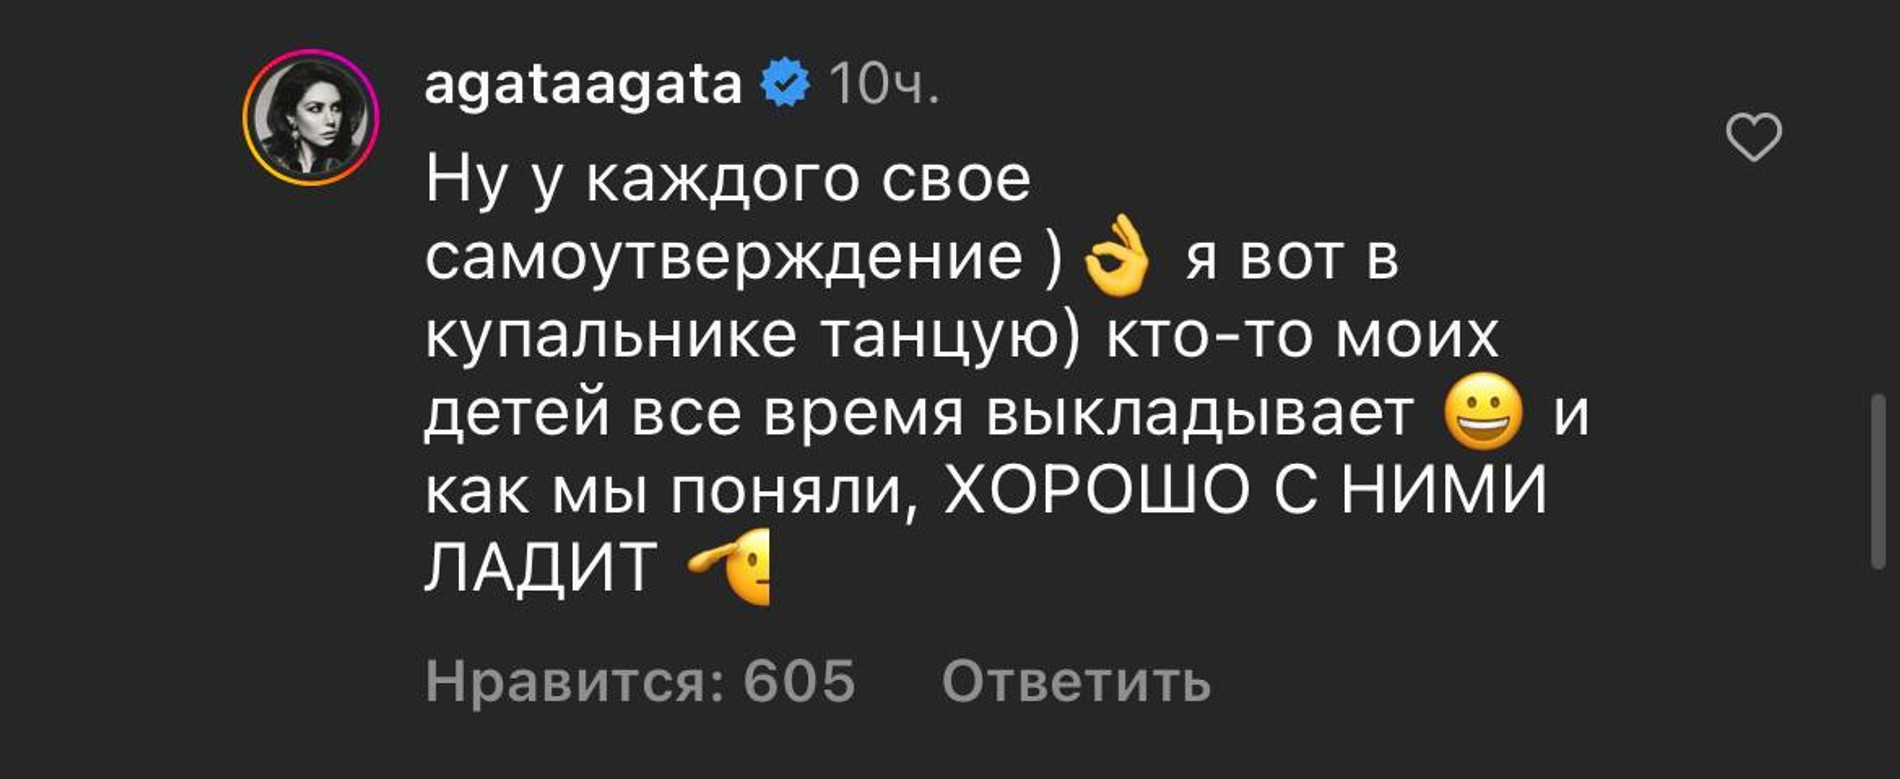 Агата Муцениеце ответила подписчице. Скриншот: Инстаграм* @agataagata